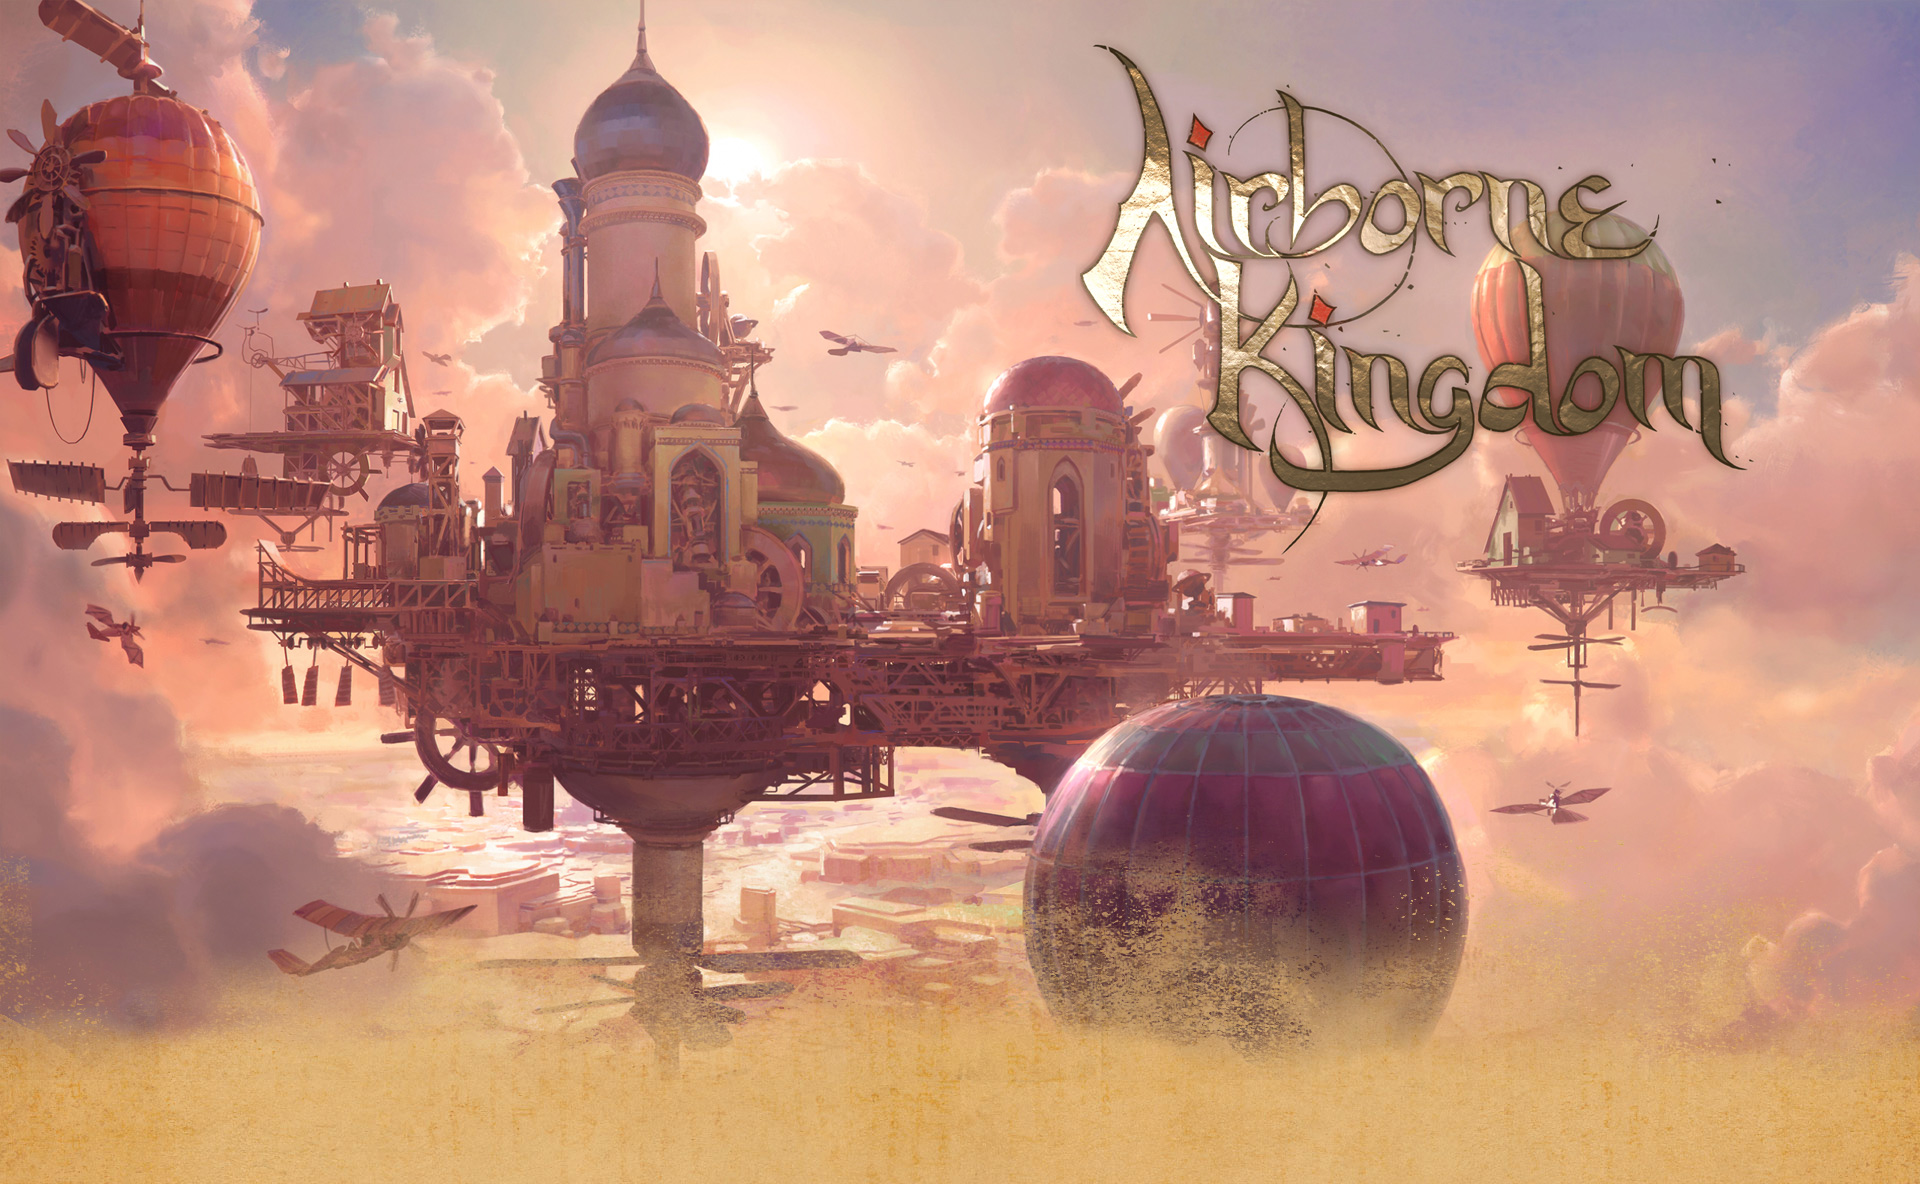 Состоялся релиз Airborne Kingdom: можно строить город в облаках